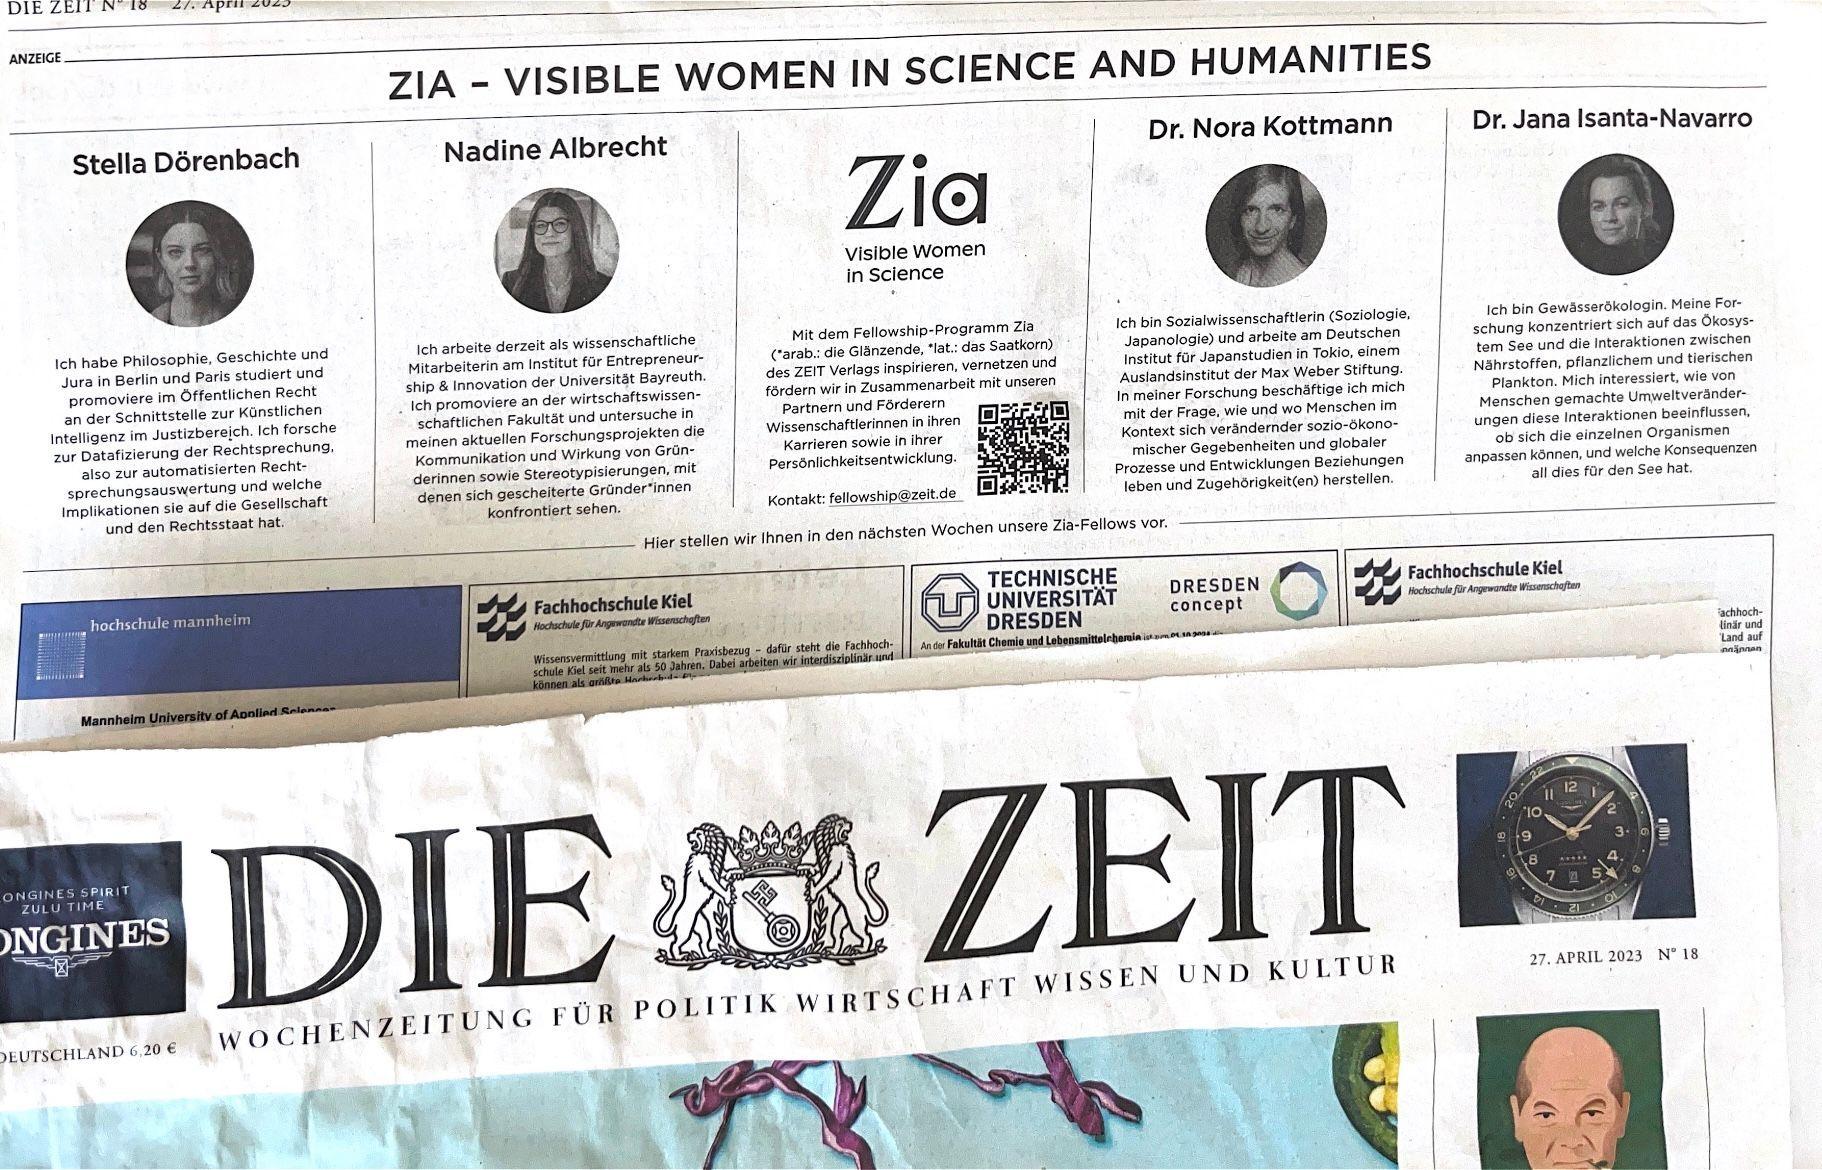 Zia Fellowship des ZEIT Verlags